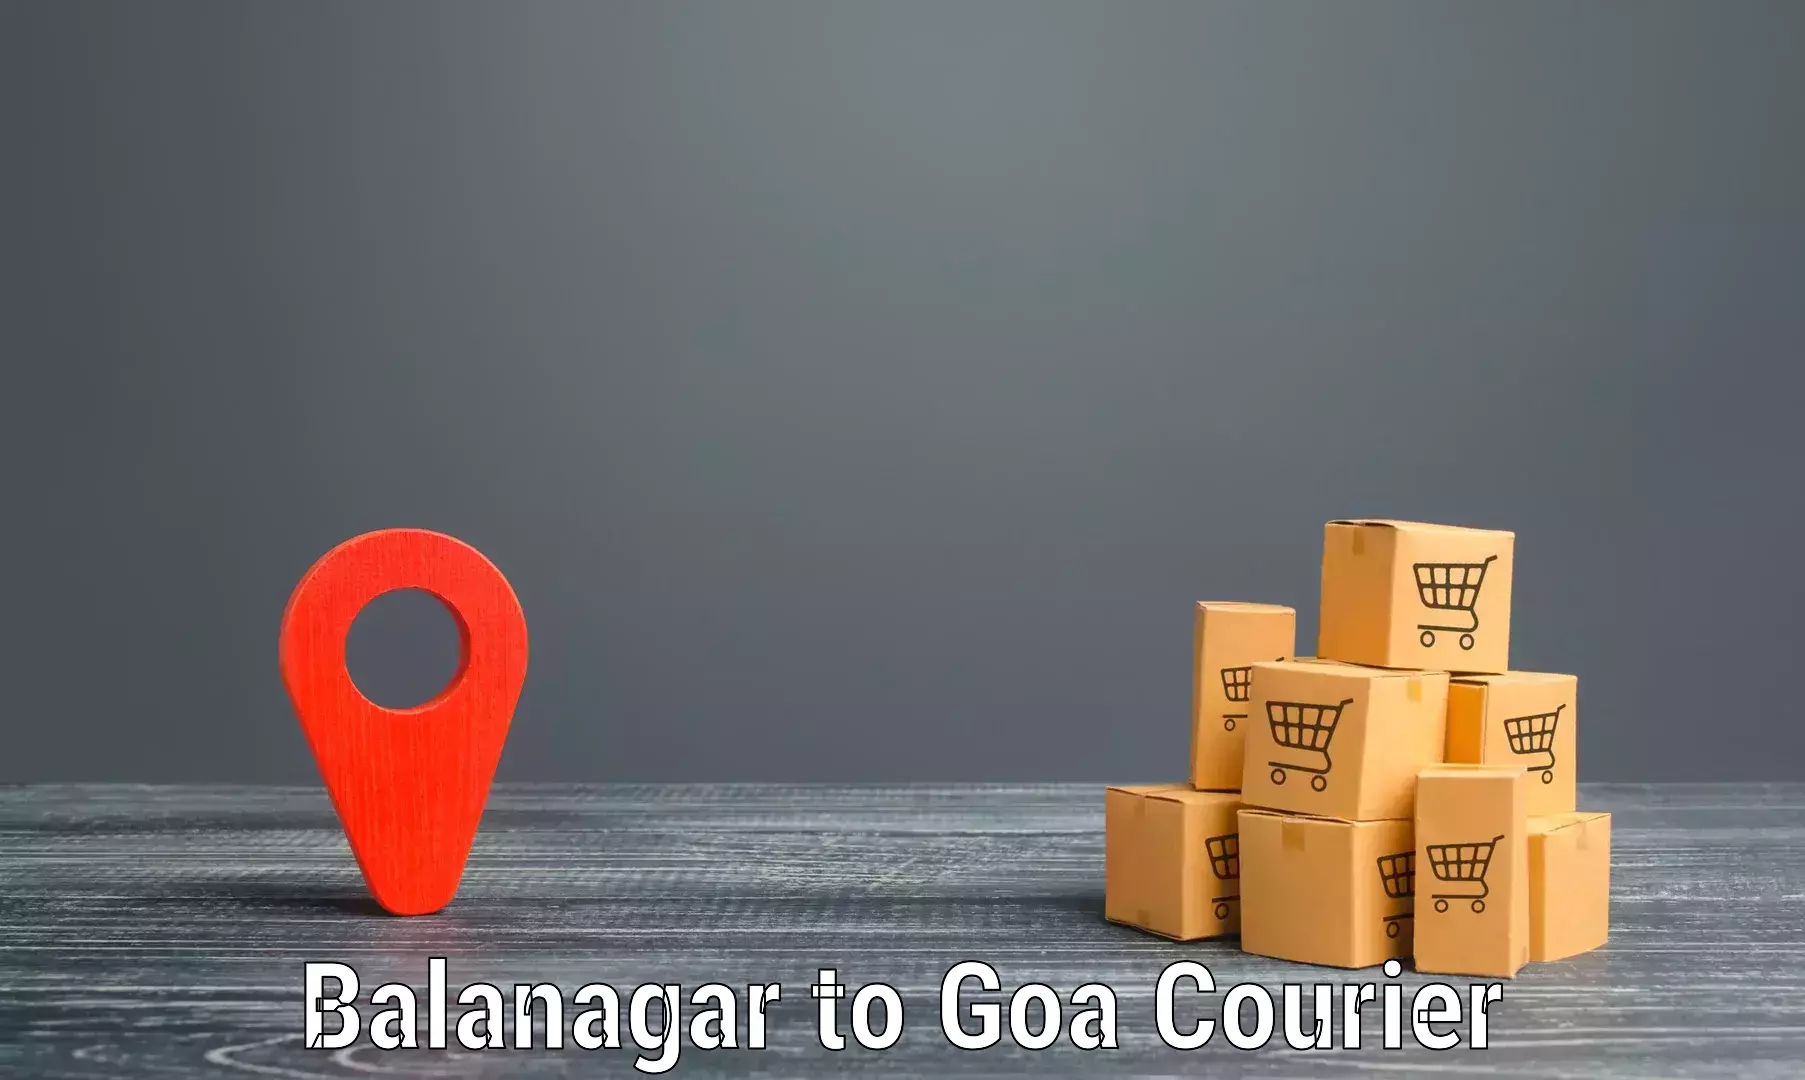 Reliable courier service Balanagar to Bicholim